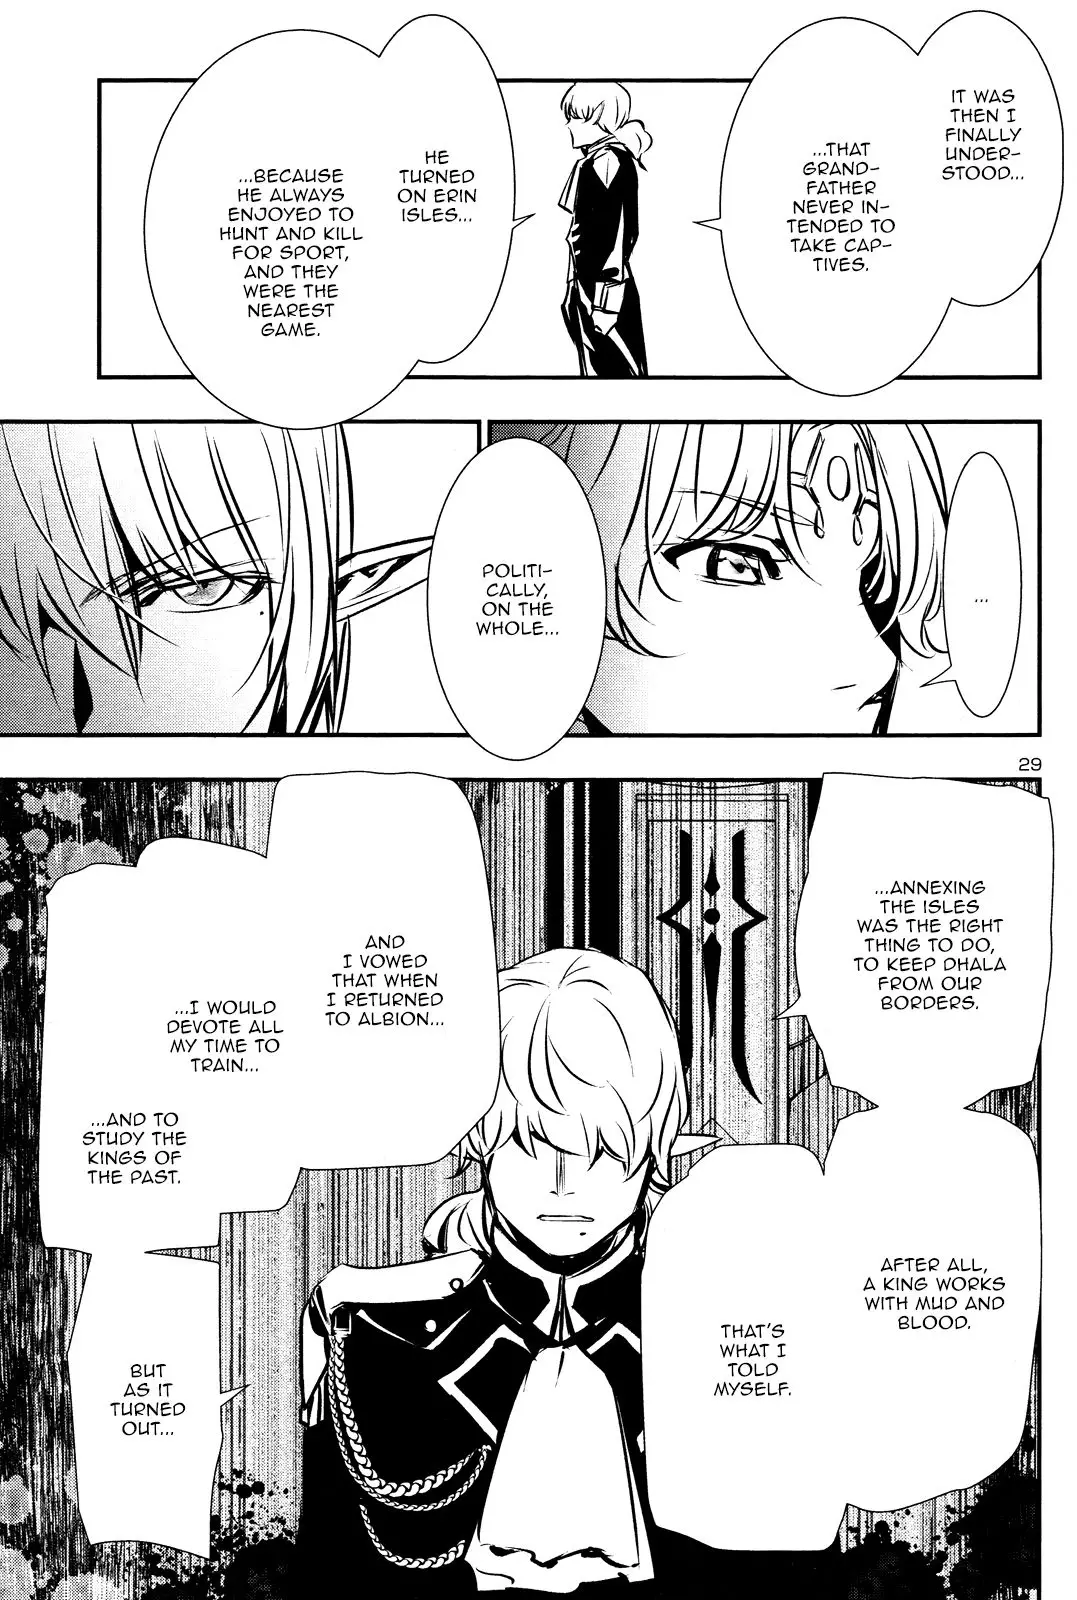 Shinju no Nectar - 38 page 29